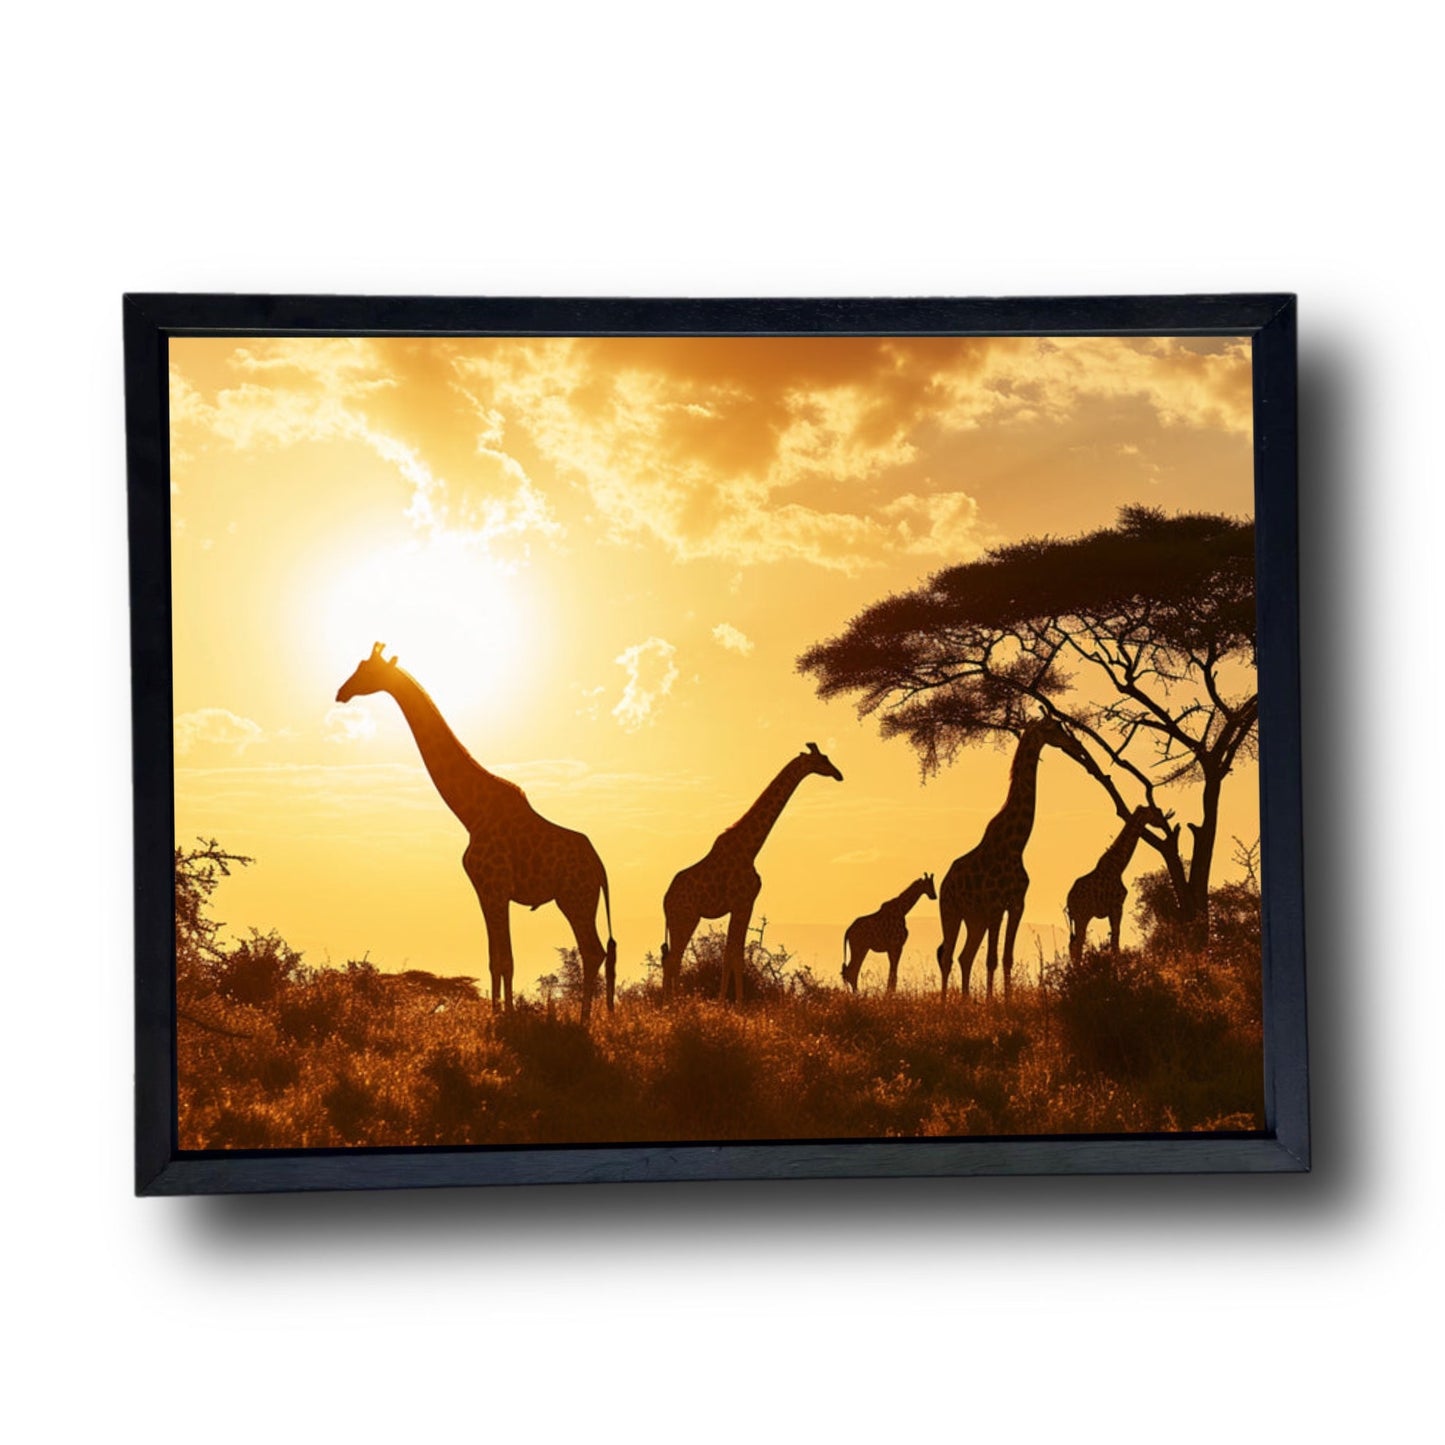 Giraffe Family Sunset 2.0